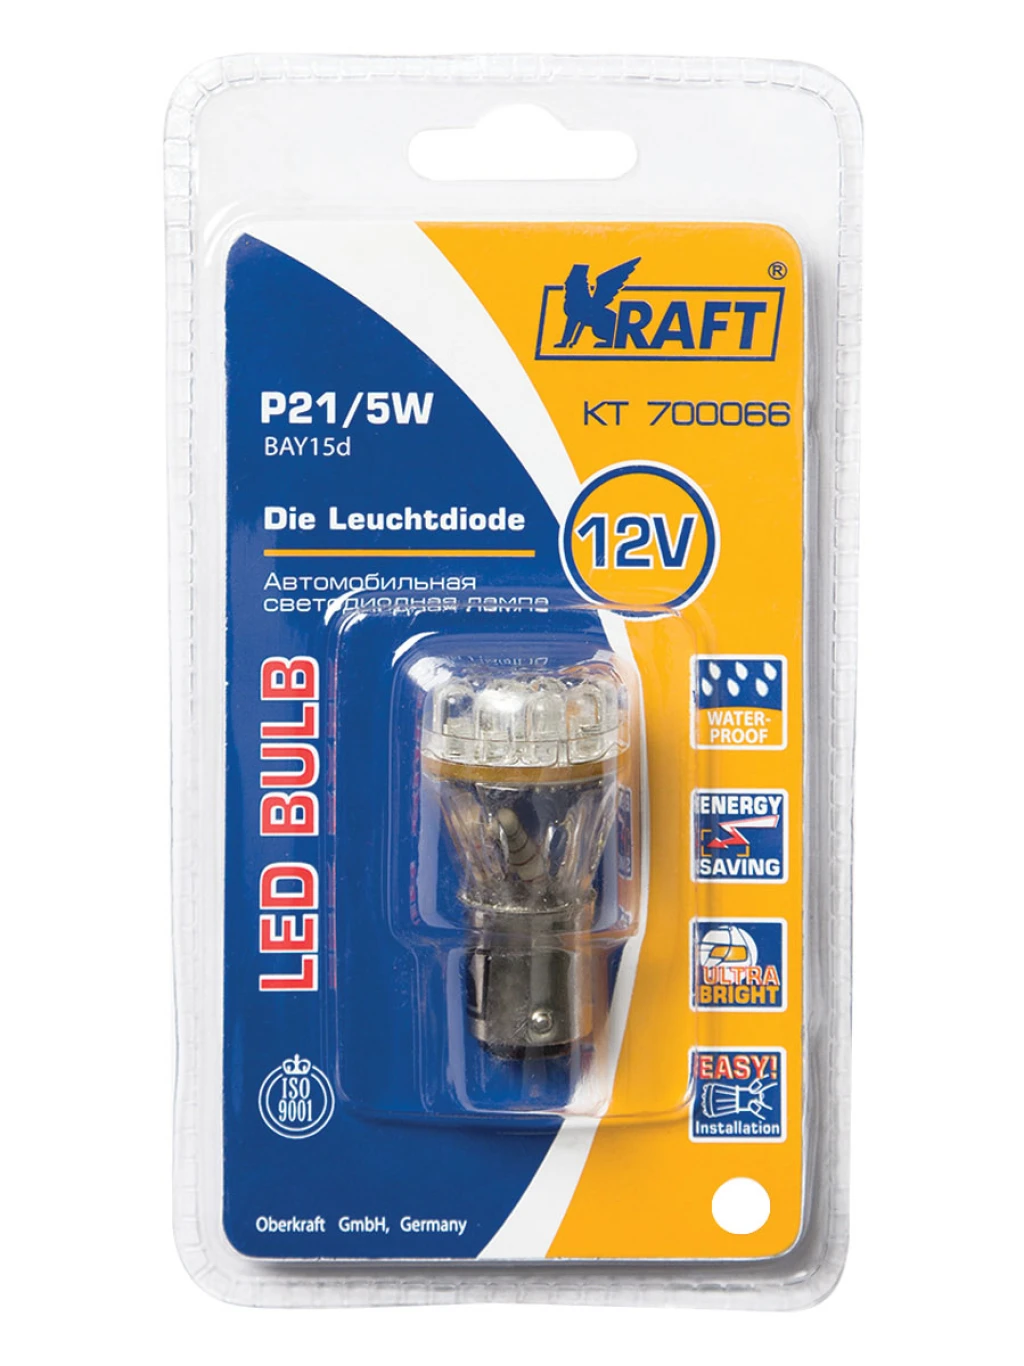 Лампа подсветки Kraft KT 700066 P21/5W 12V White 12 LEDs, 1